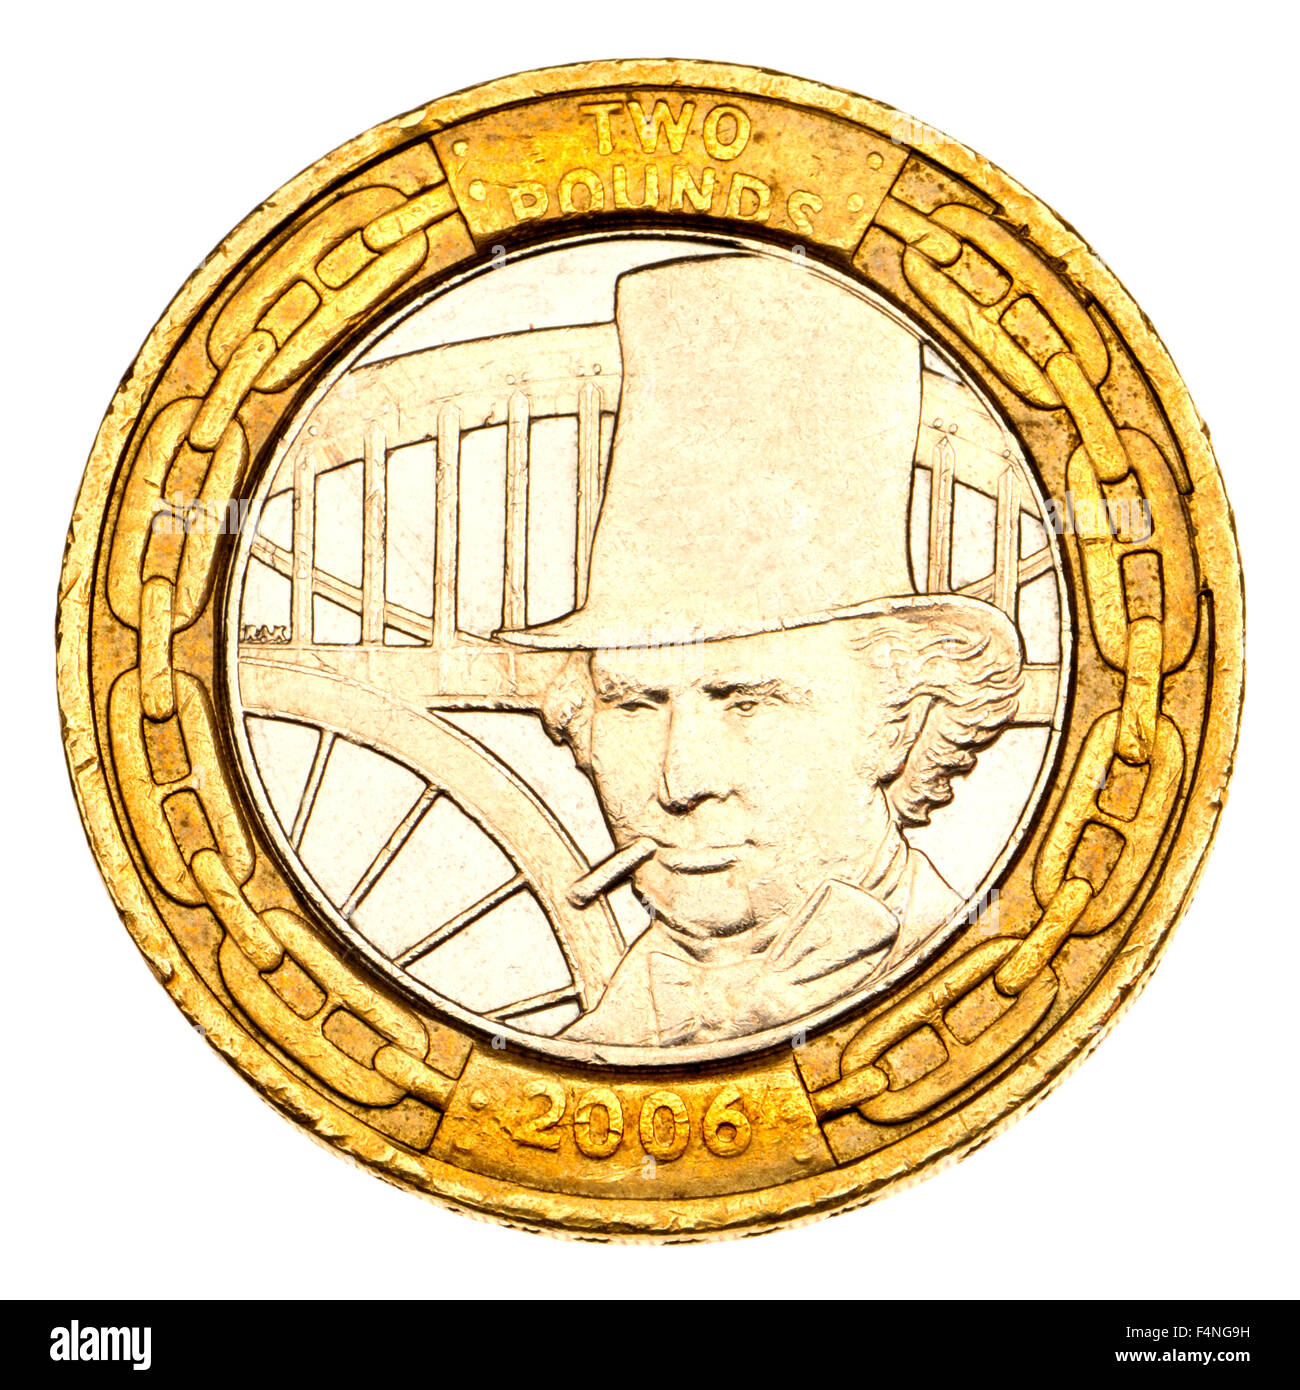 British £2 moneta (2006) per commemorare i 200 anni dalla nascita di Isambard Kingdom Brunel (ingegnere: 1806-1859) progettare un portrai Foto Stock